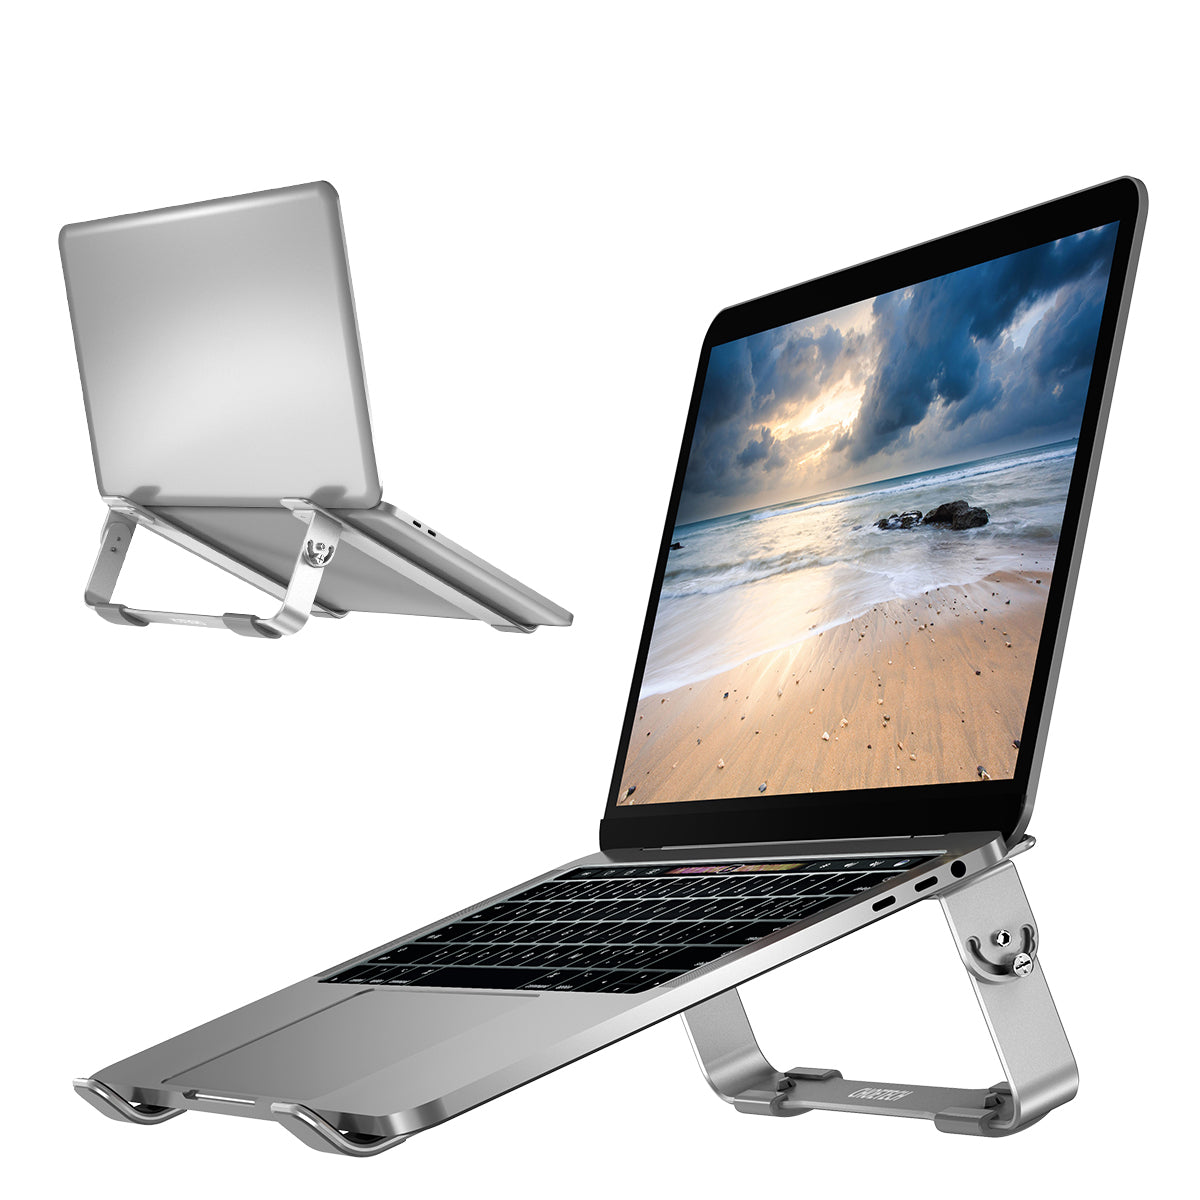 H033 support de refroidissement amovible en aluminium pour ordinateur portable